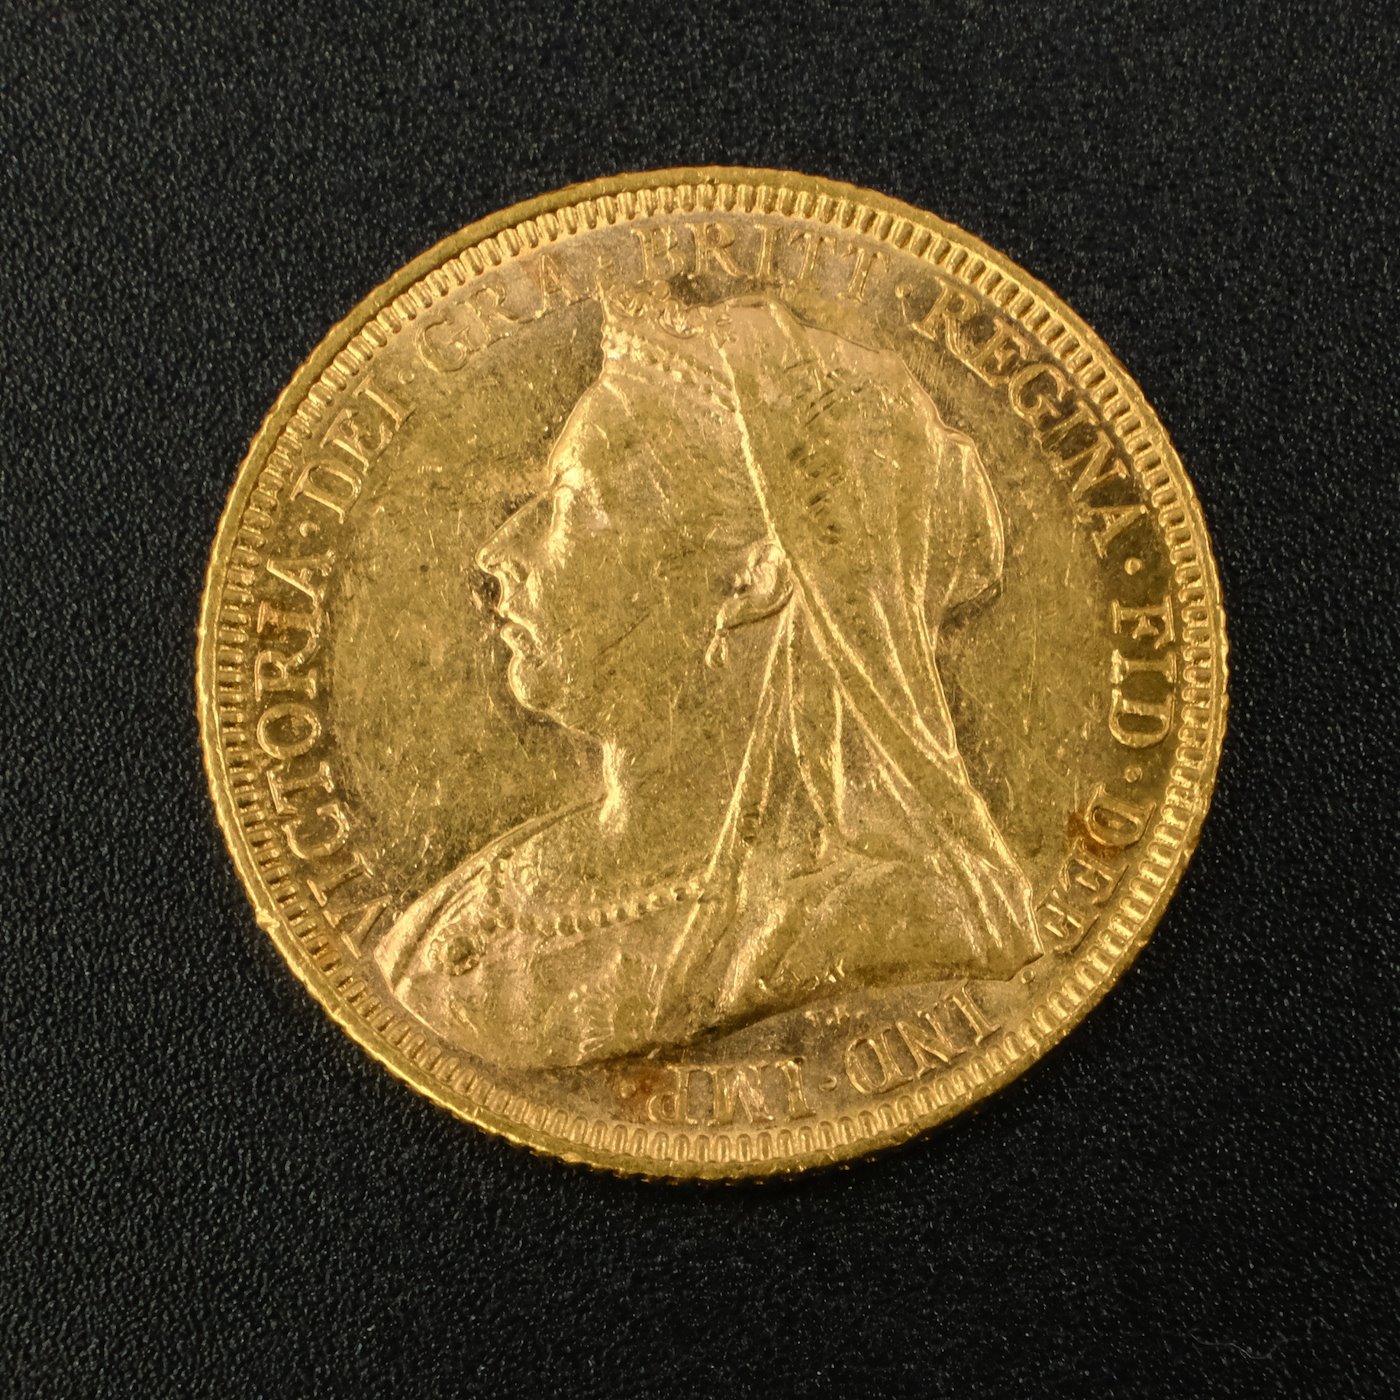 Mince - Velká Británie zlatý Sovereign Victoria Závoj 1894, zlato 916,7/1000, hrubá hmotnost 7,99g !!!